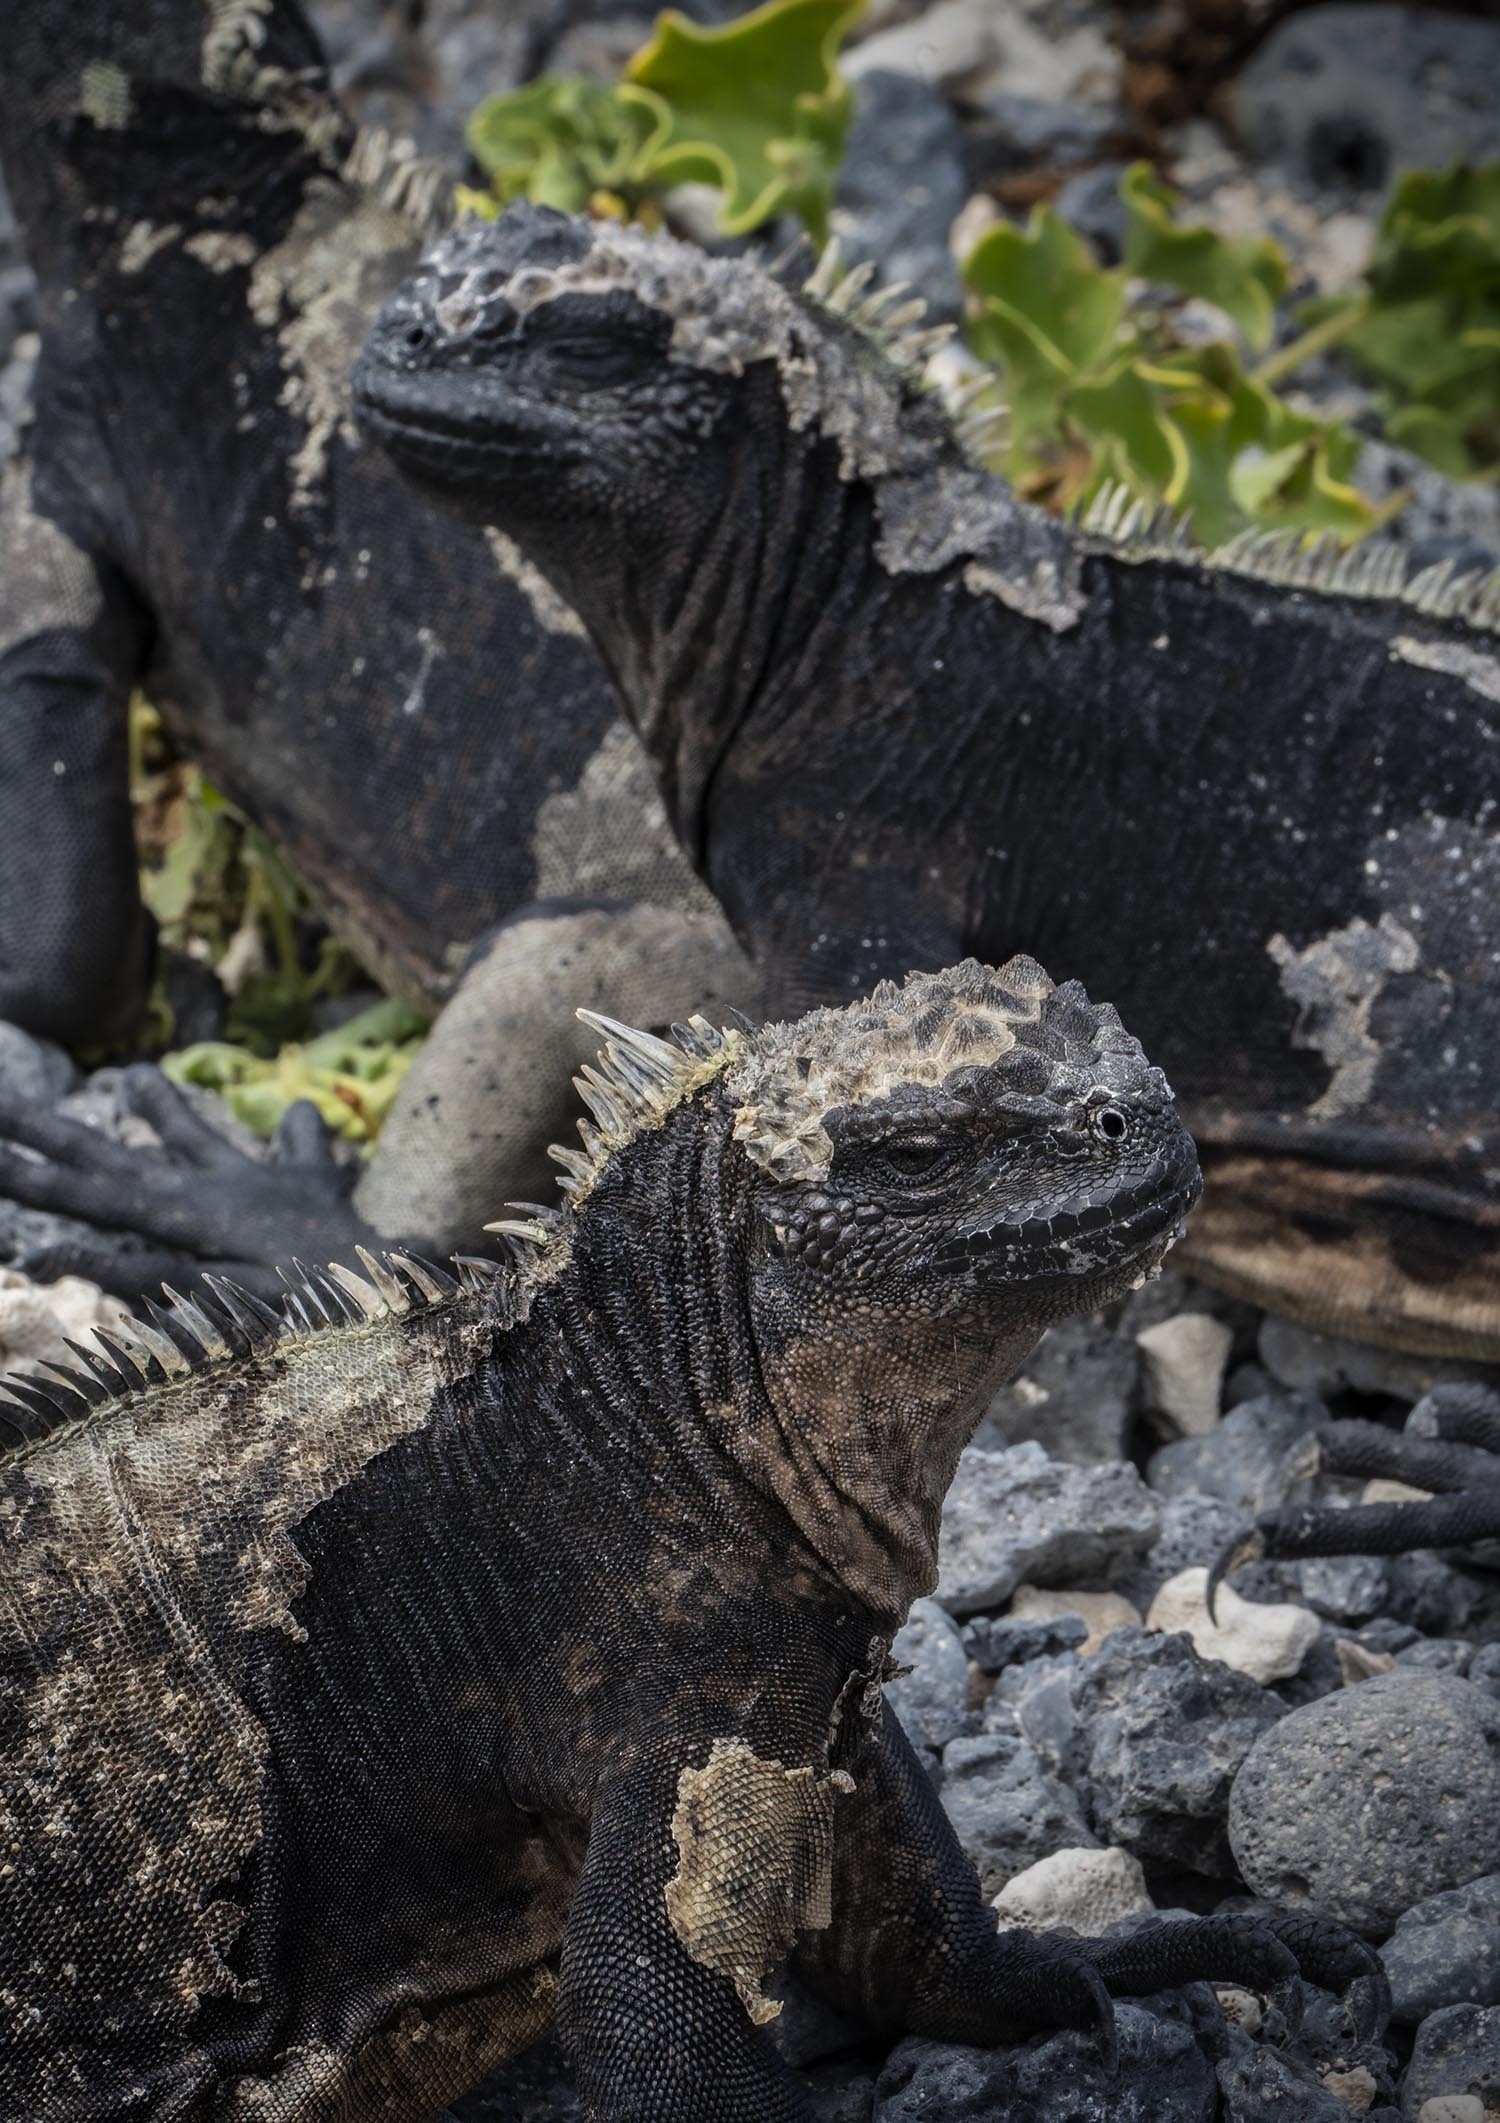 Closeup of several iguanas